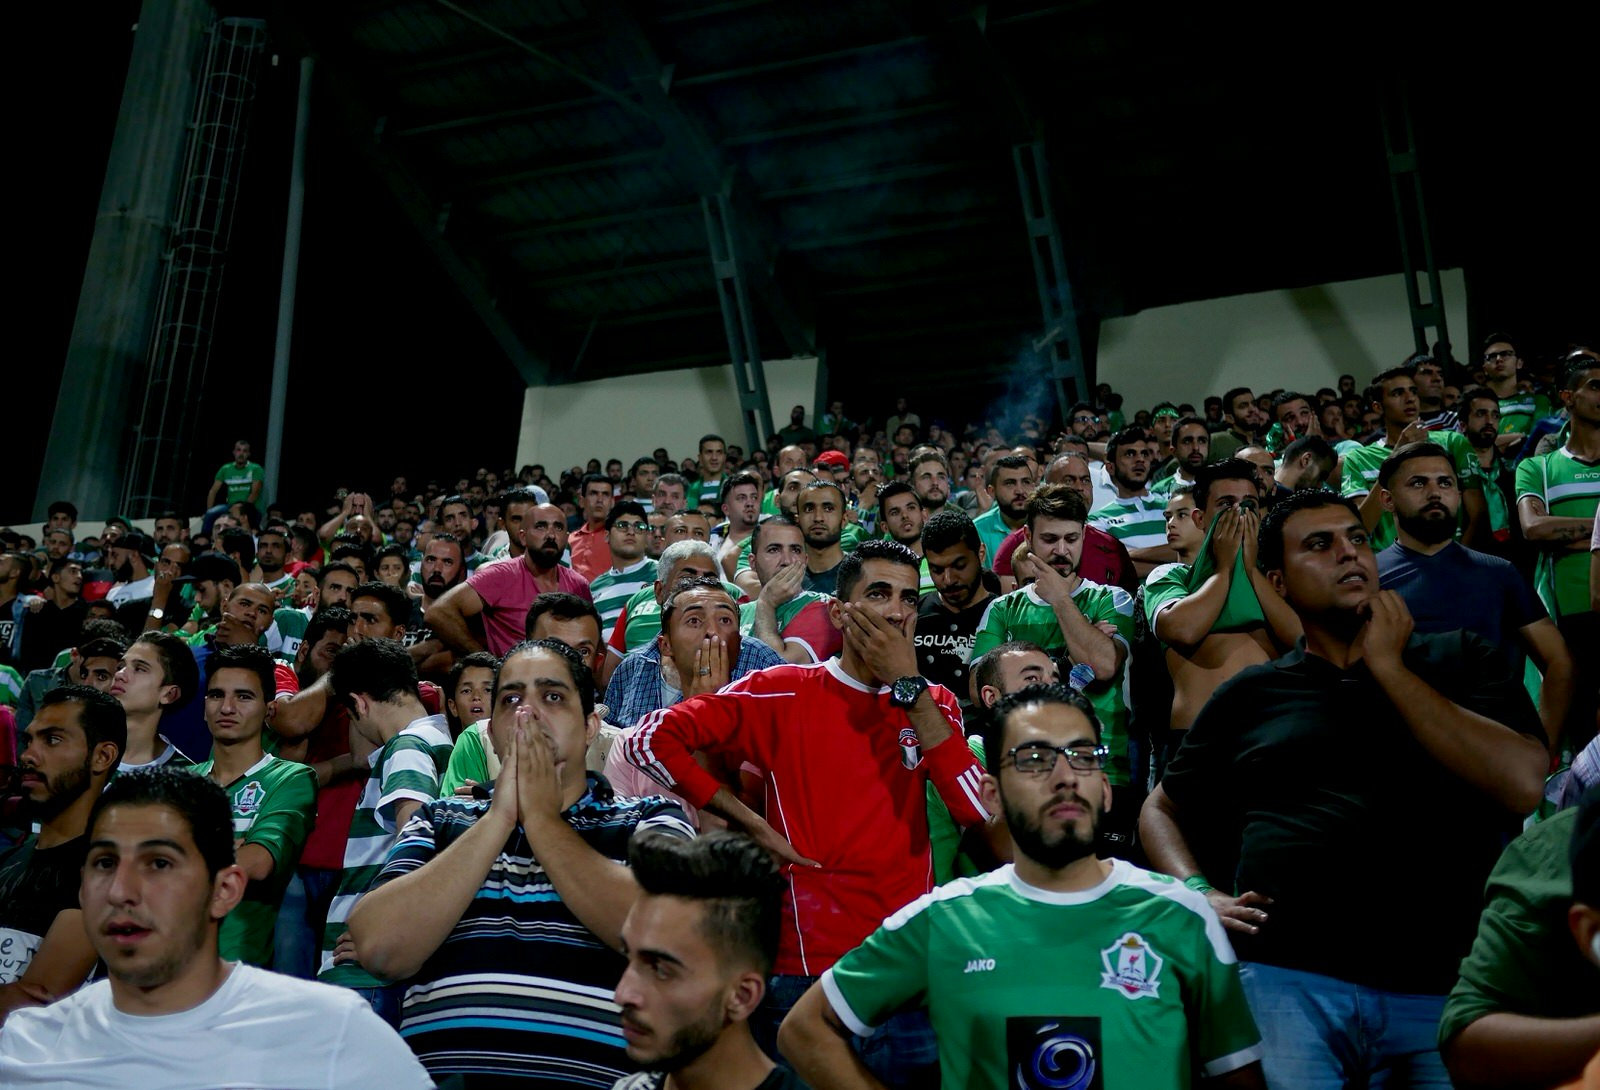 Wehdat fans react to the football match against Faisaly near Amman, Jordan